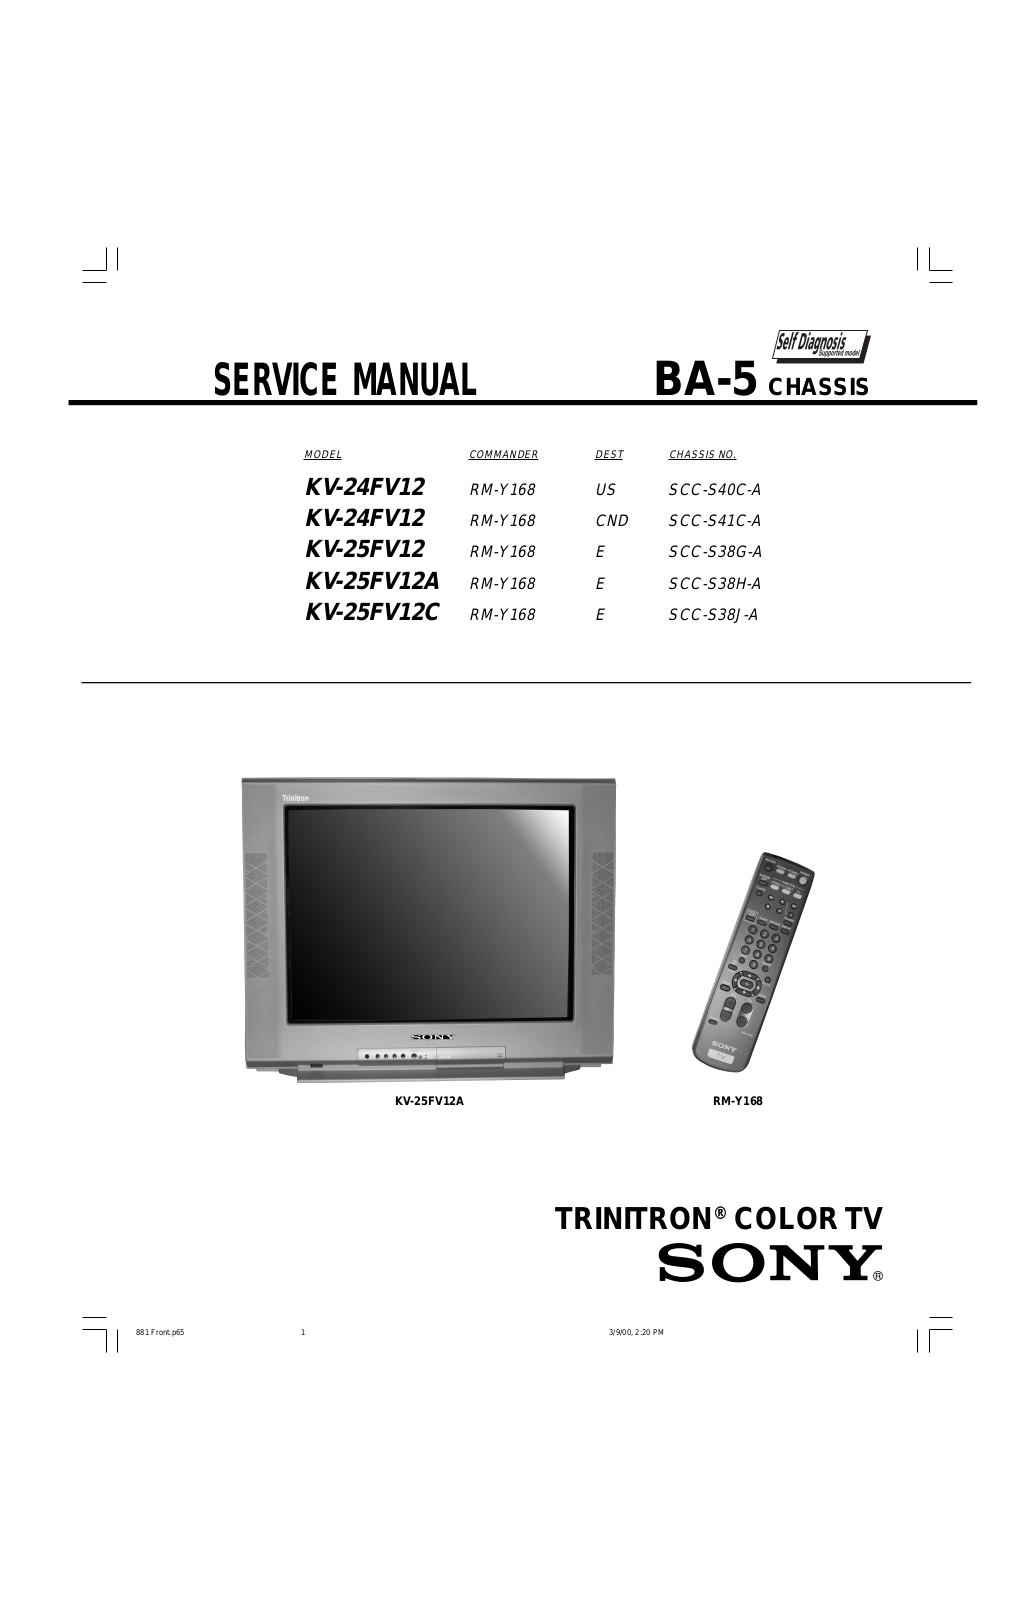 Sony BA-5, KV-25FV12C, KV-25FV12A, KV-25FV12, KV-24FV12 Service Manual